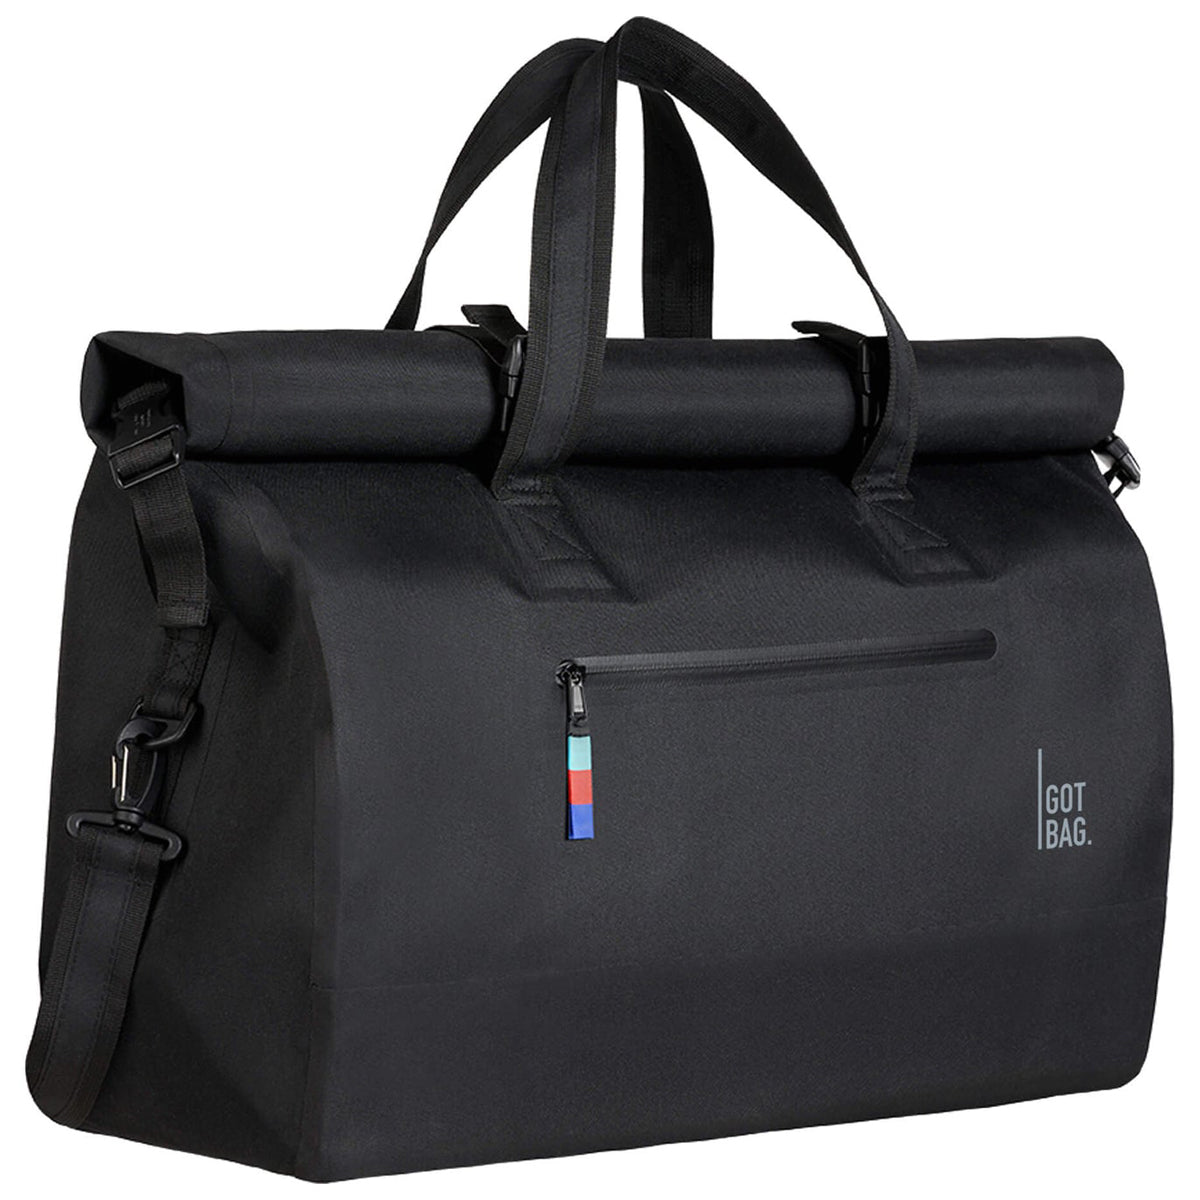 Got Bag Weekender Duffle Bag - Black image 3